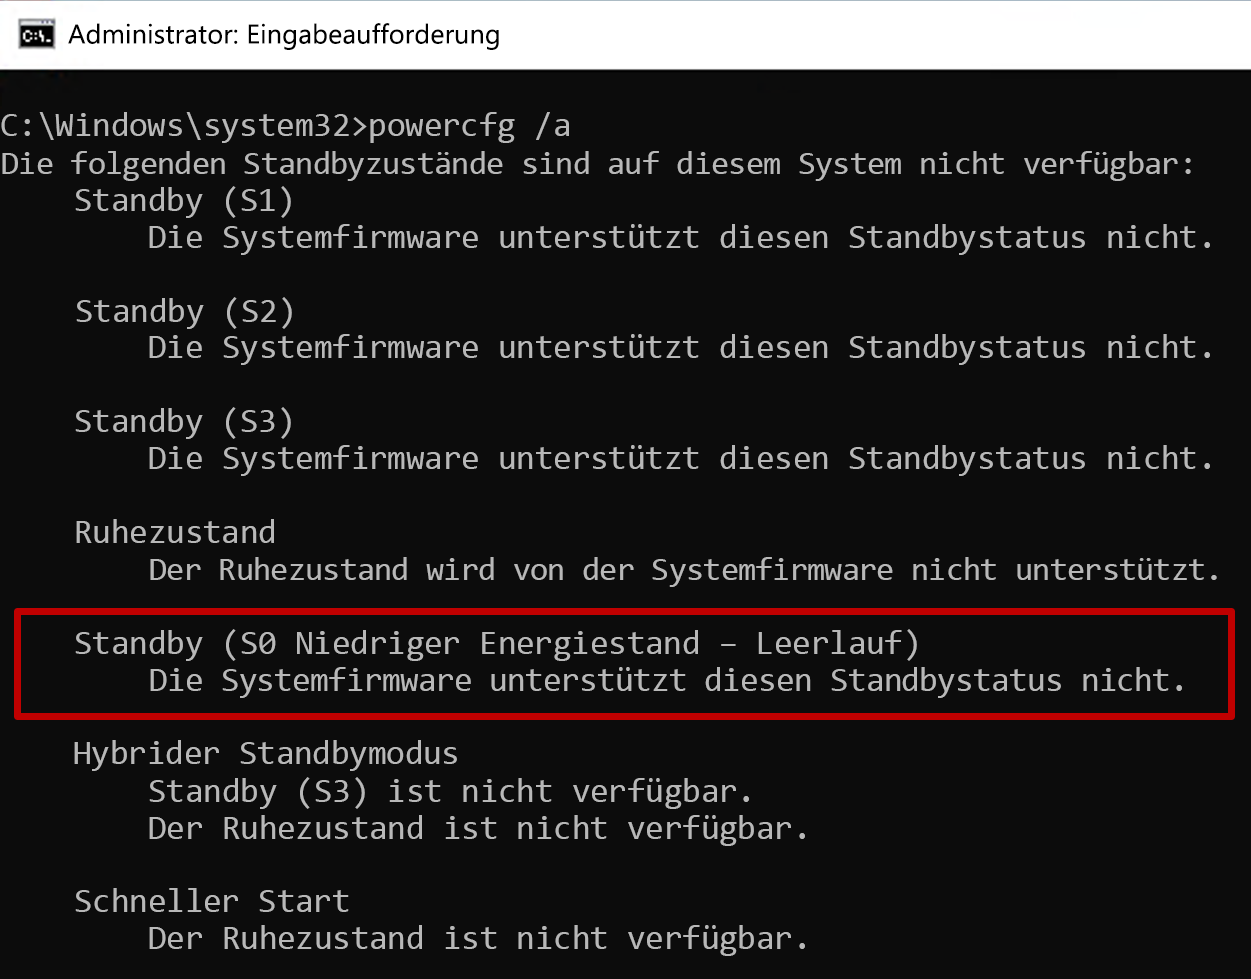 Screenshot der Eingabeaufforderung mit der Ausgabe des powercfg-Befehls mit dem Standbyzustand S0 nicht verfügbar.